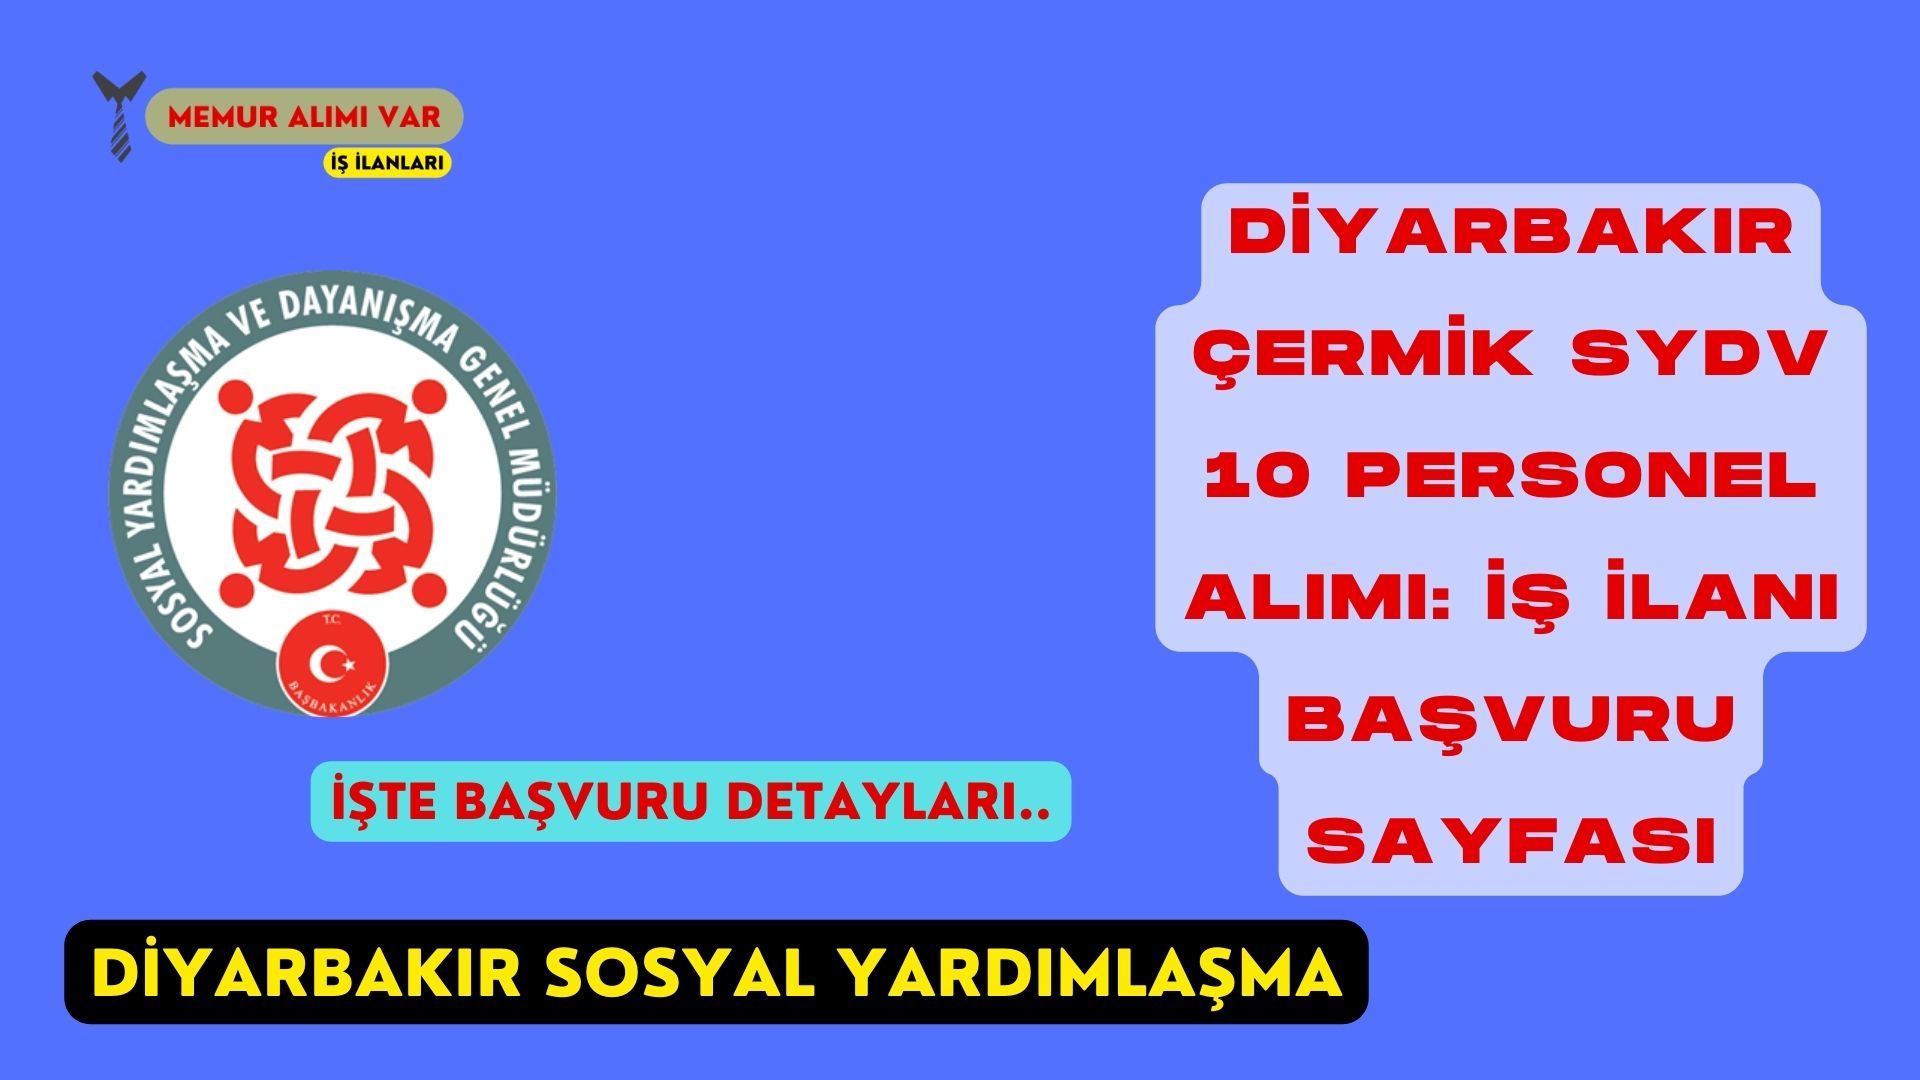 Diyarbakır Çermik SYDV 10 Personel Alımı: İş İlanı Başvuru Sayfası